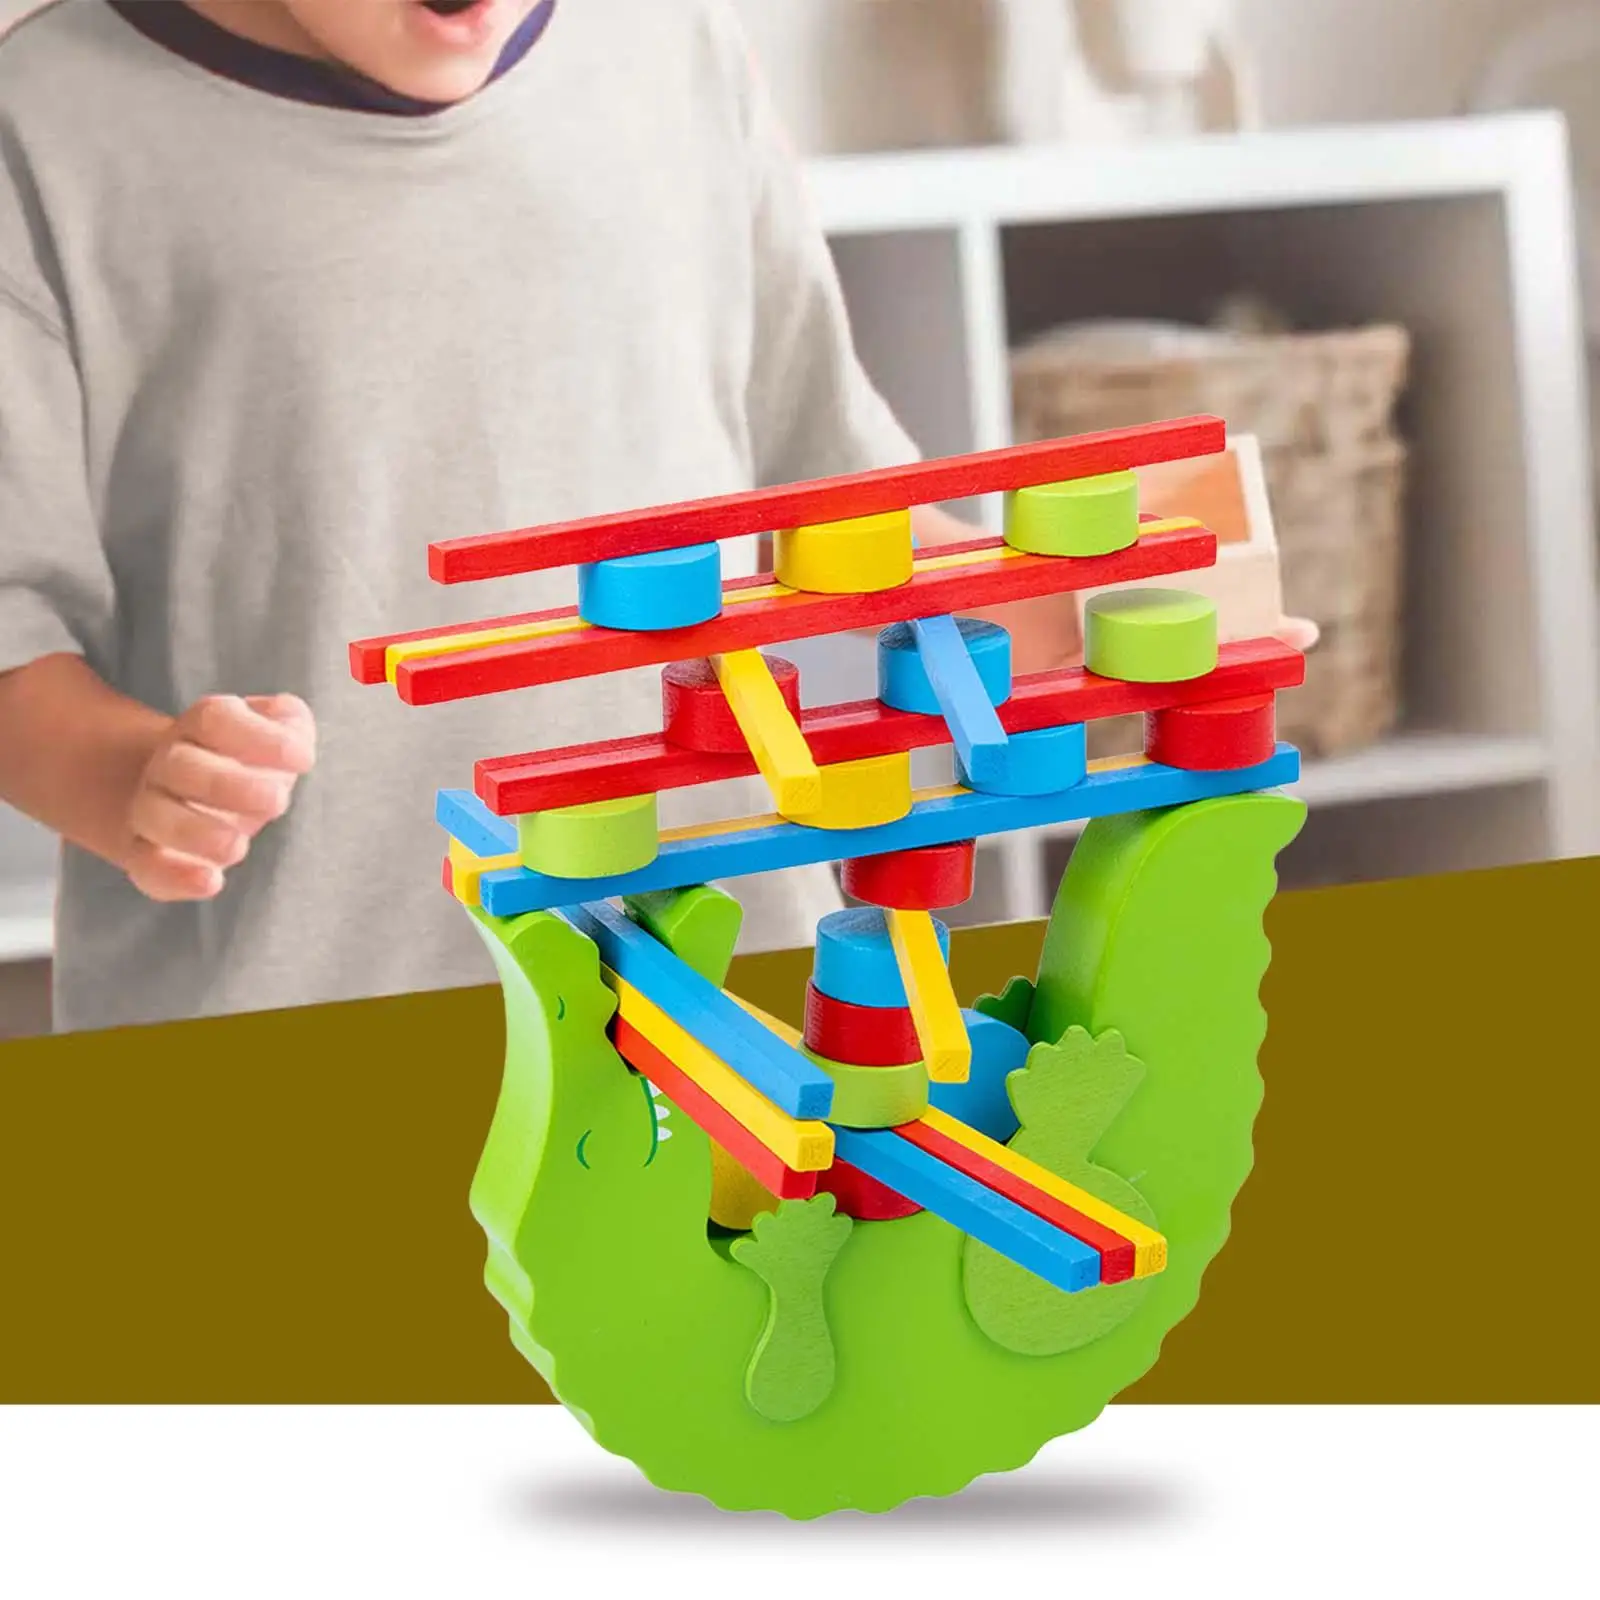 

Деревянные игрушечные блоки для детей 4-6 лет